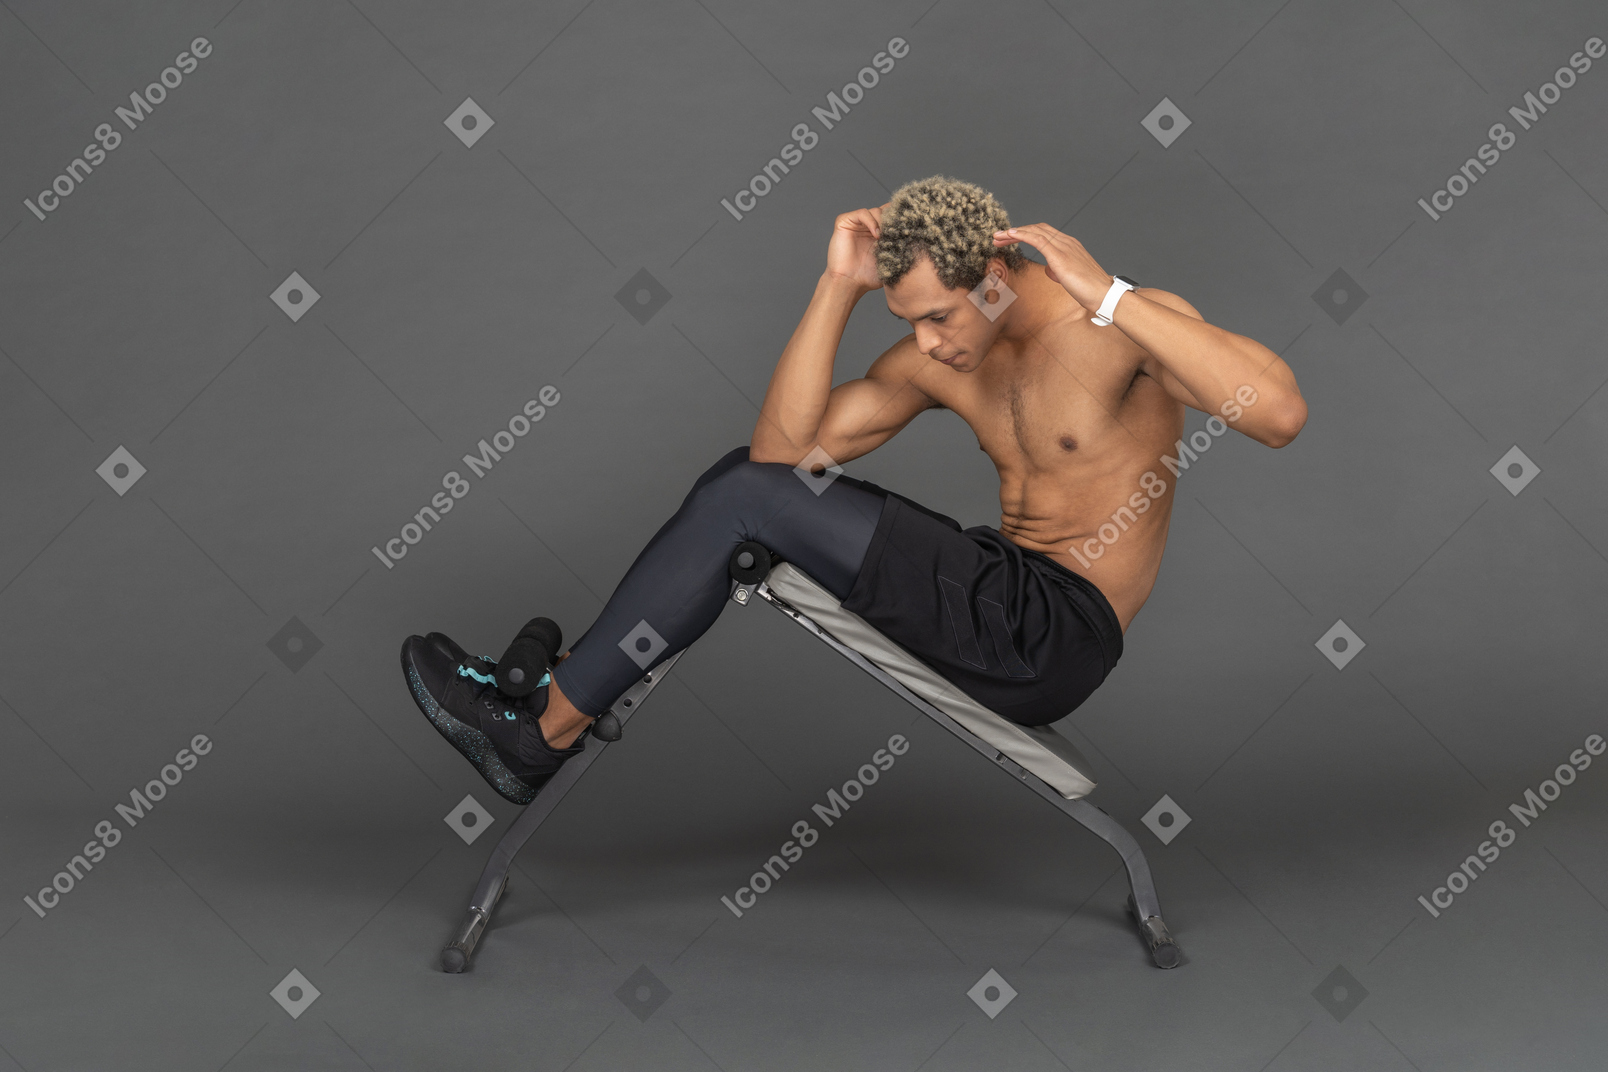 Mann macht sit-ups auf einer bank